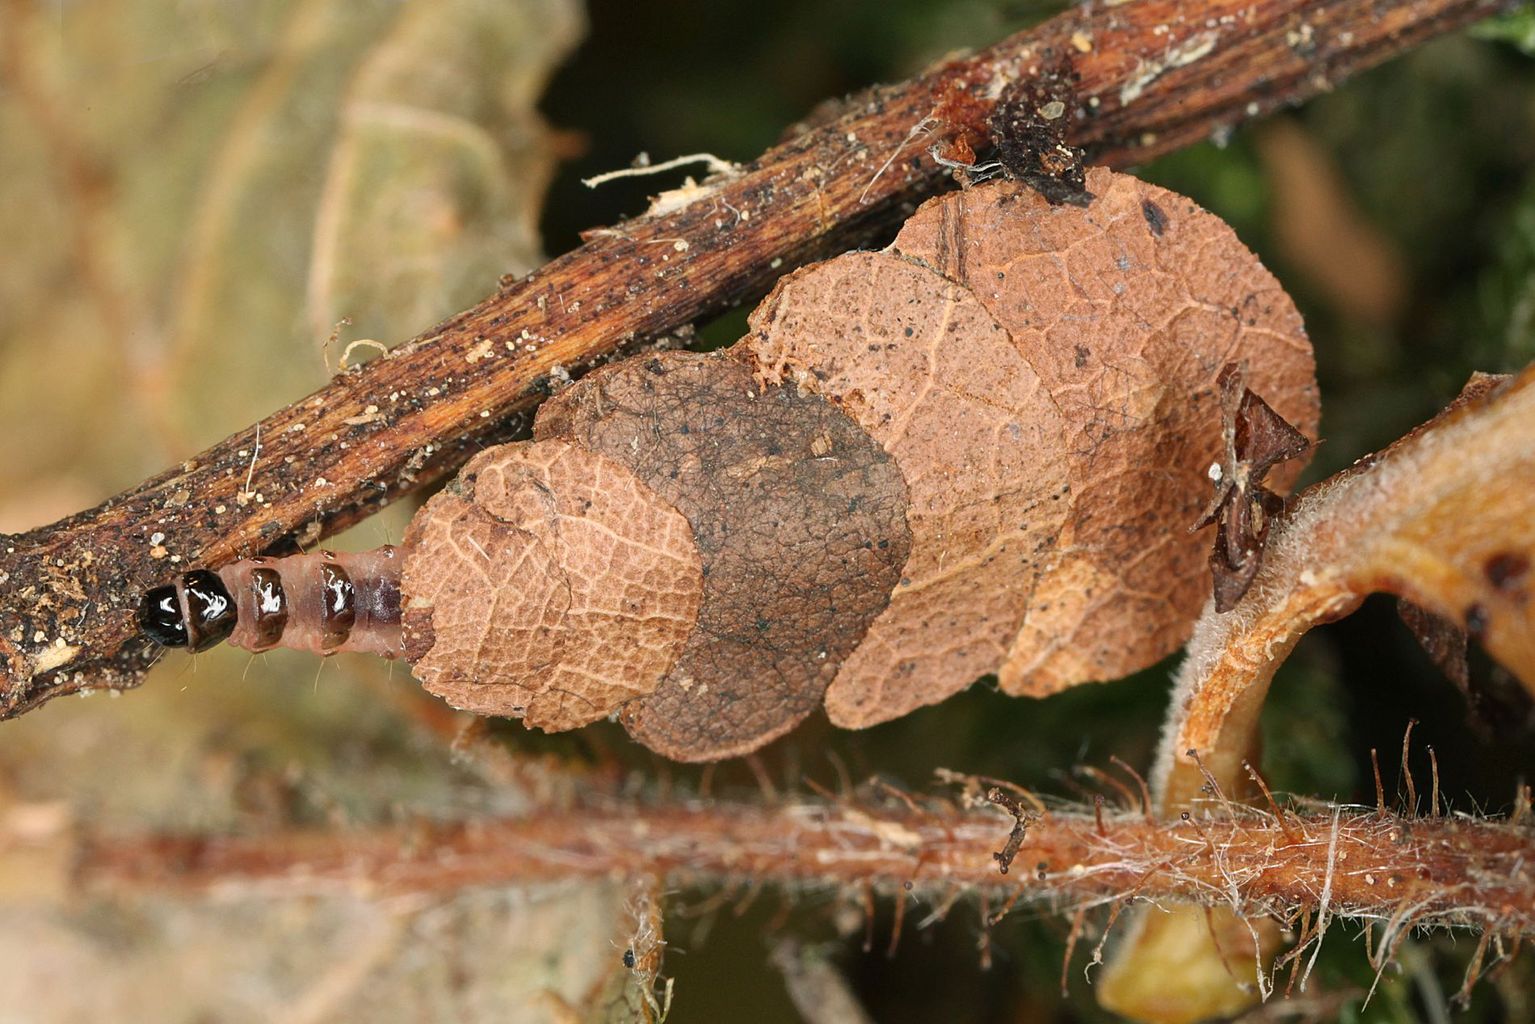 Erwachsene Raupe von Nematopogon schwarziellus in ihrem Gehäuse, aufgebaut aus halbmondförmig ausgeschnittenen Stücken welken Laubes. (Bild Rudolf Bryner)